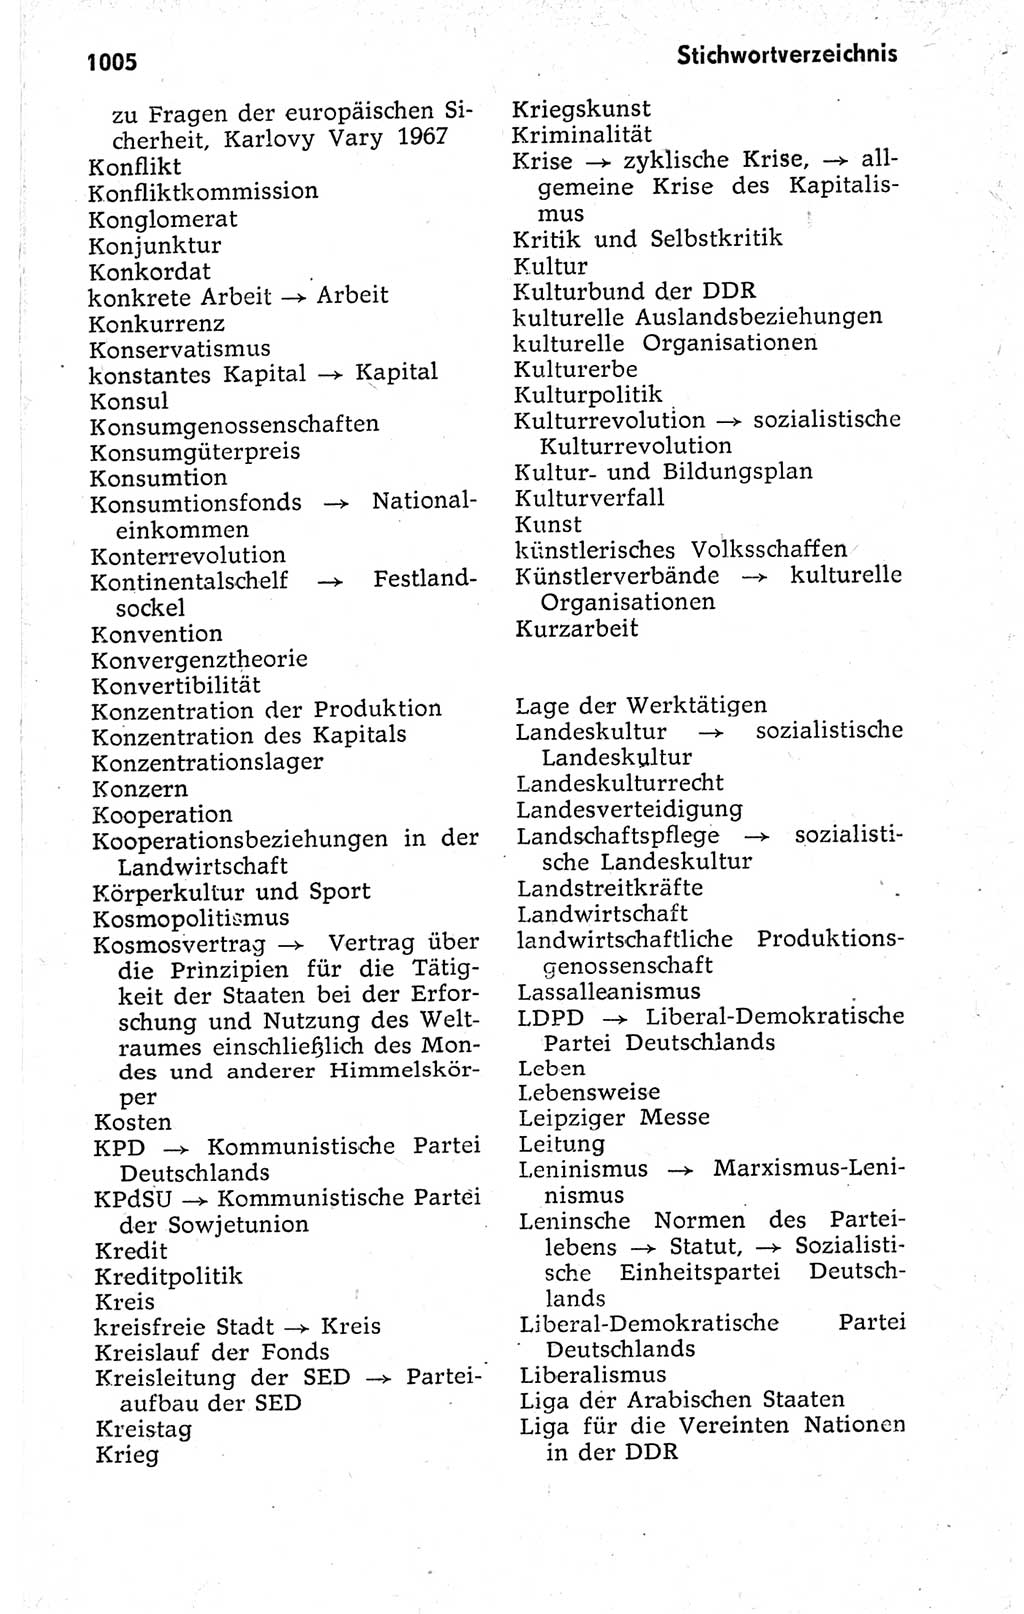 Kleines politisches Wörterbuch [Deutsche Demokratische Republik (DDR)] 1973, Seite 1005 (Kl. pol. Wb. DDR 1973, S. 1005)